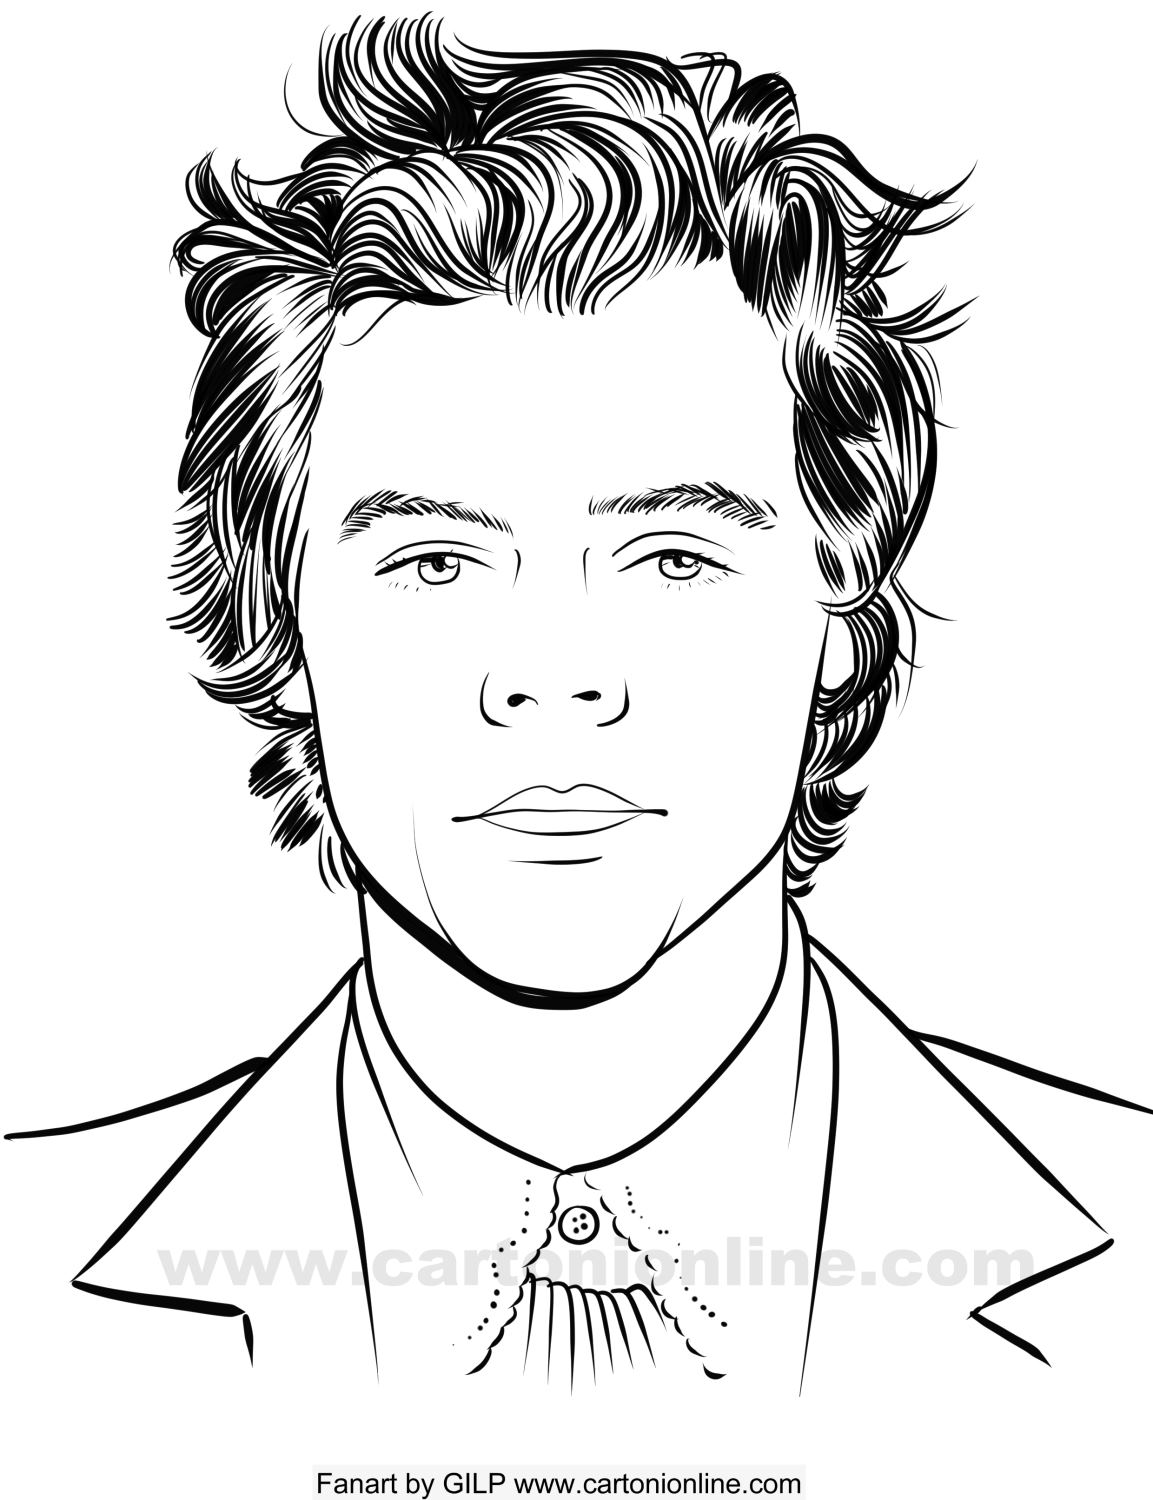 Disegno di Harry Styles 07 dei One Direction da stampare e colorare